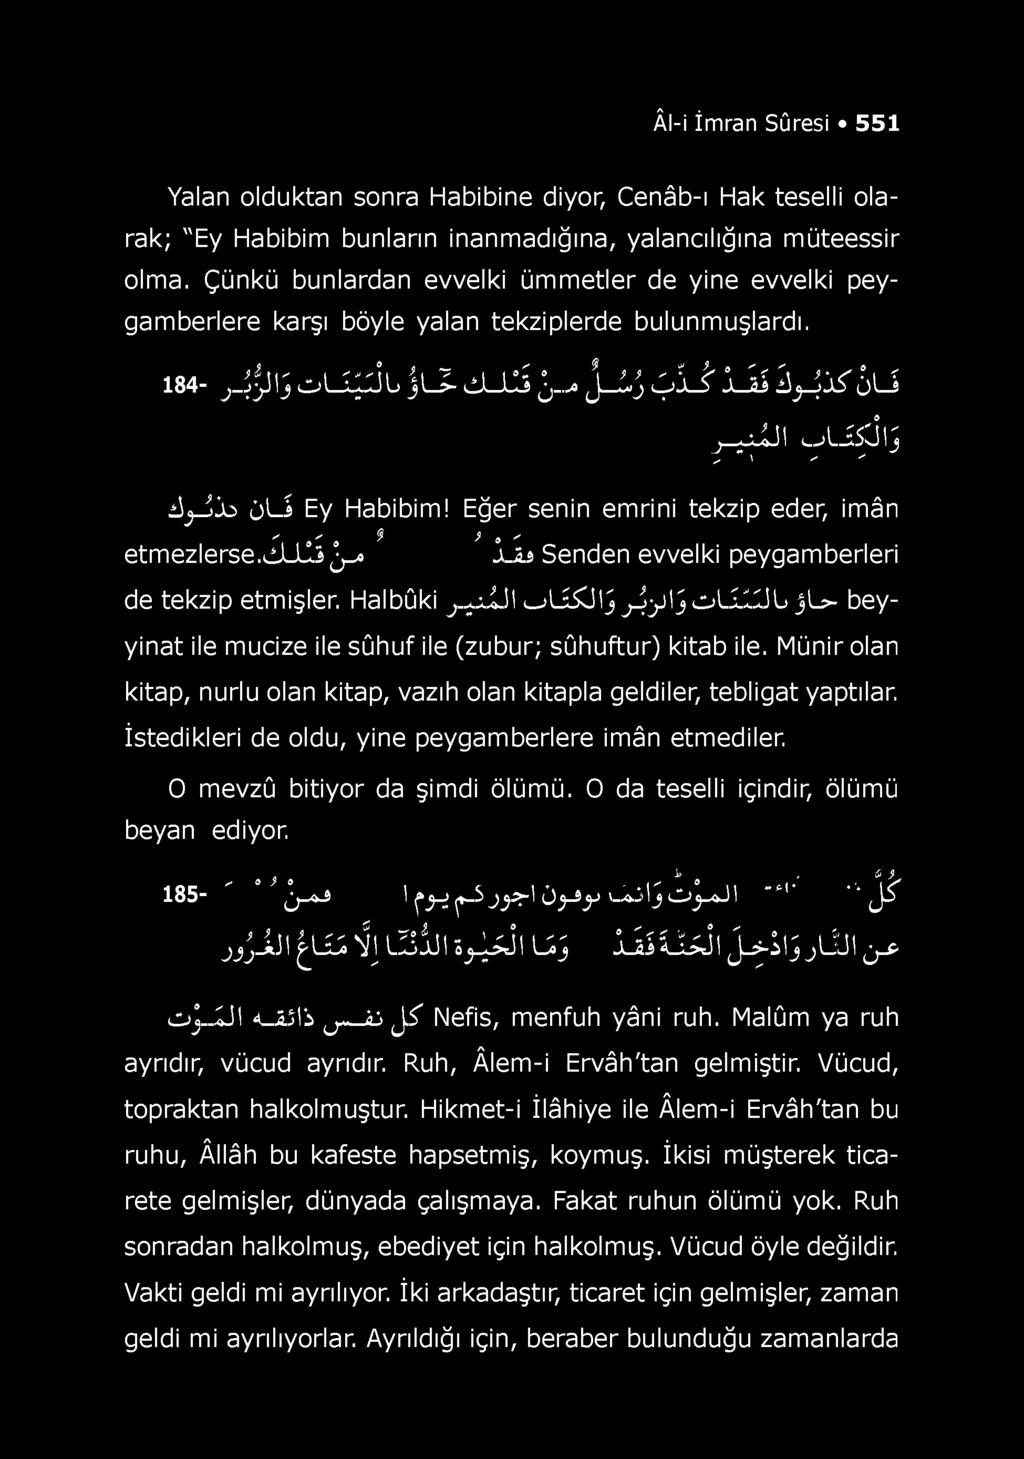 Âl-i İmran Sûresi 551 Yalan olduktan sonra Habibine diyor, Cenâb-ı Hak teselli olarak; "Ey Habibim bunların inanmadığına, yalancılığına müteessir olma.